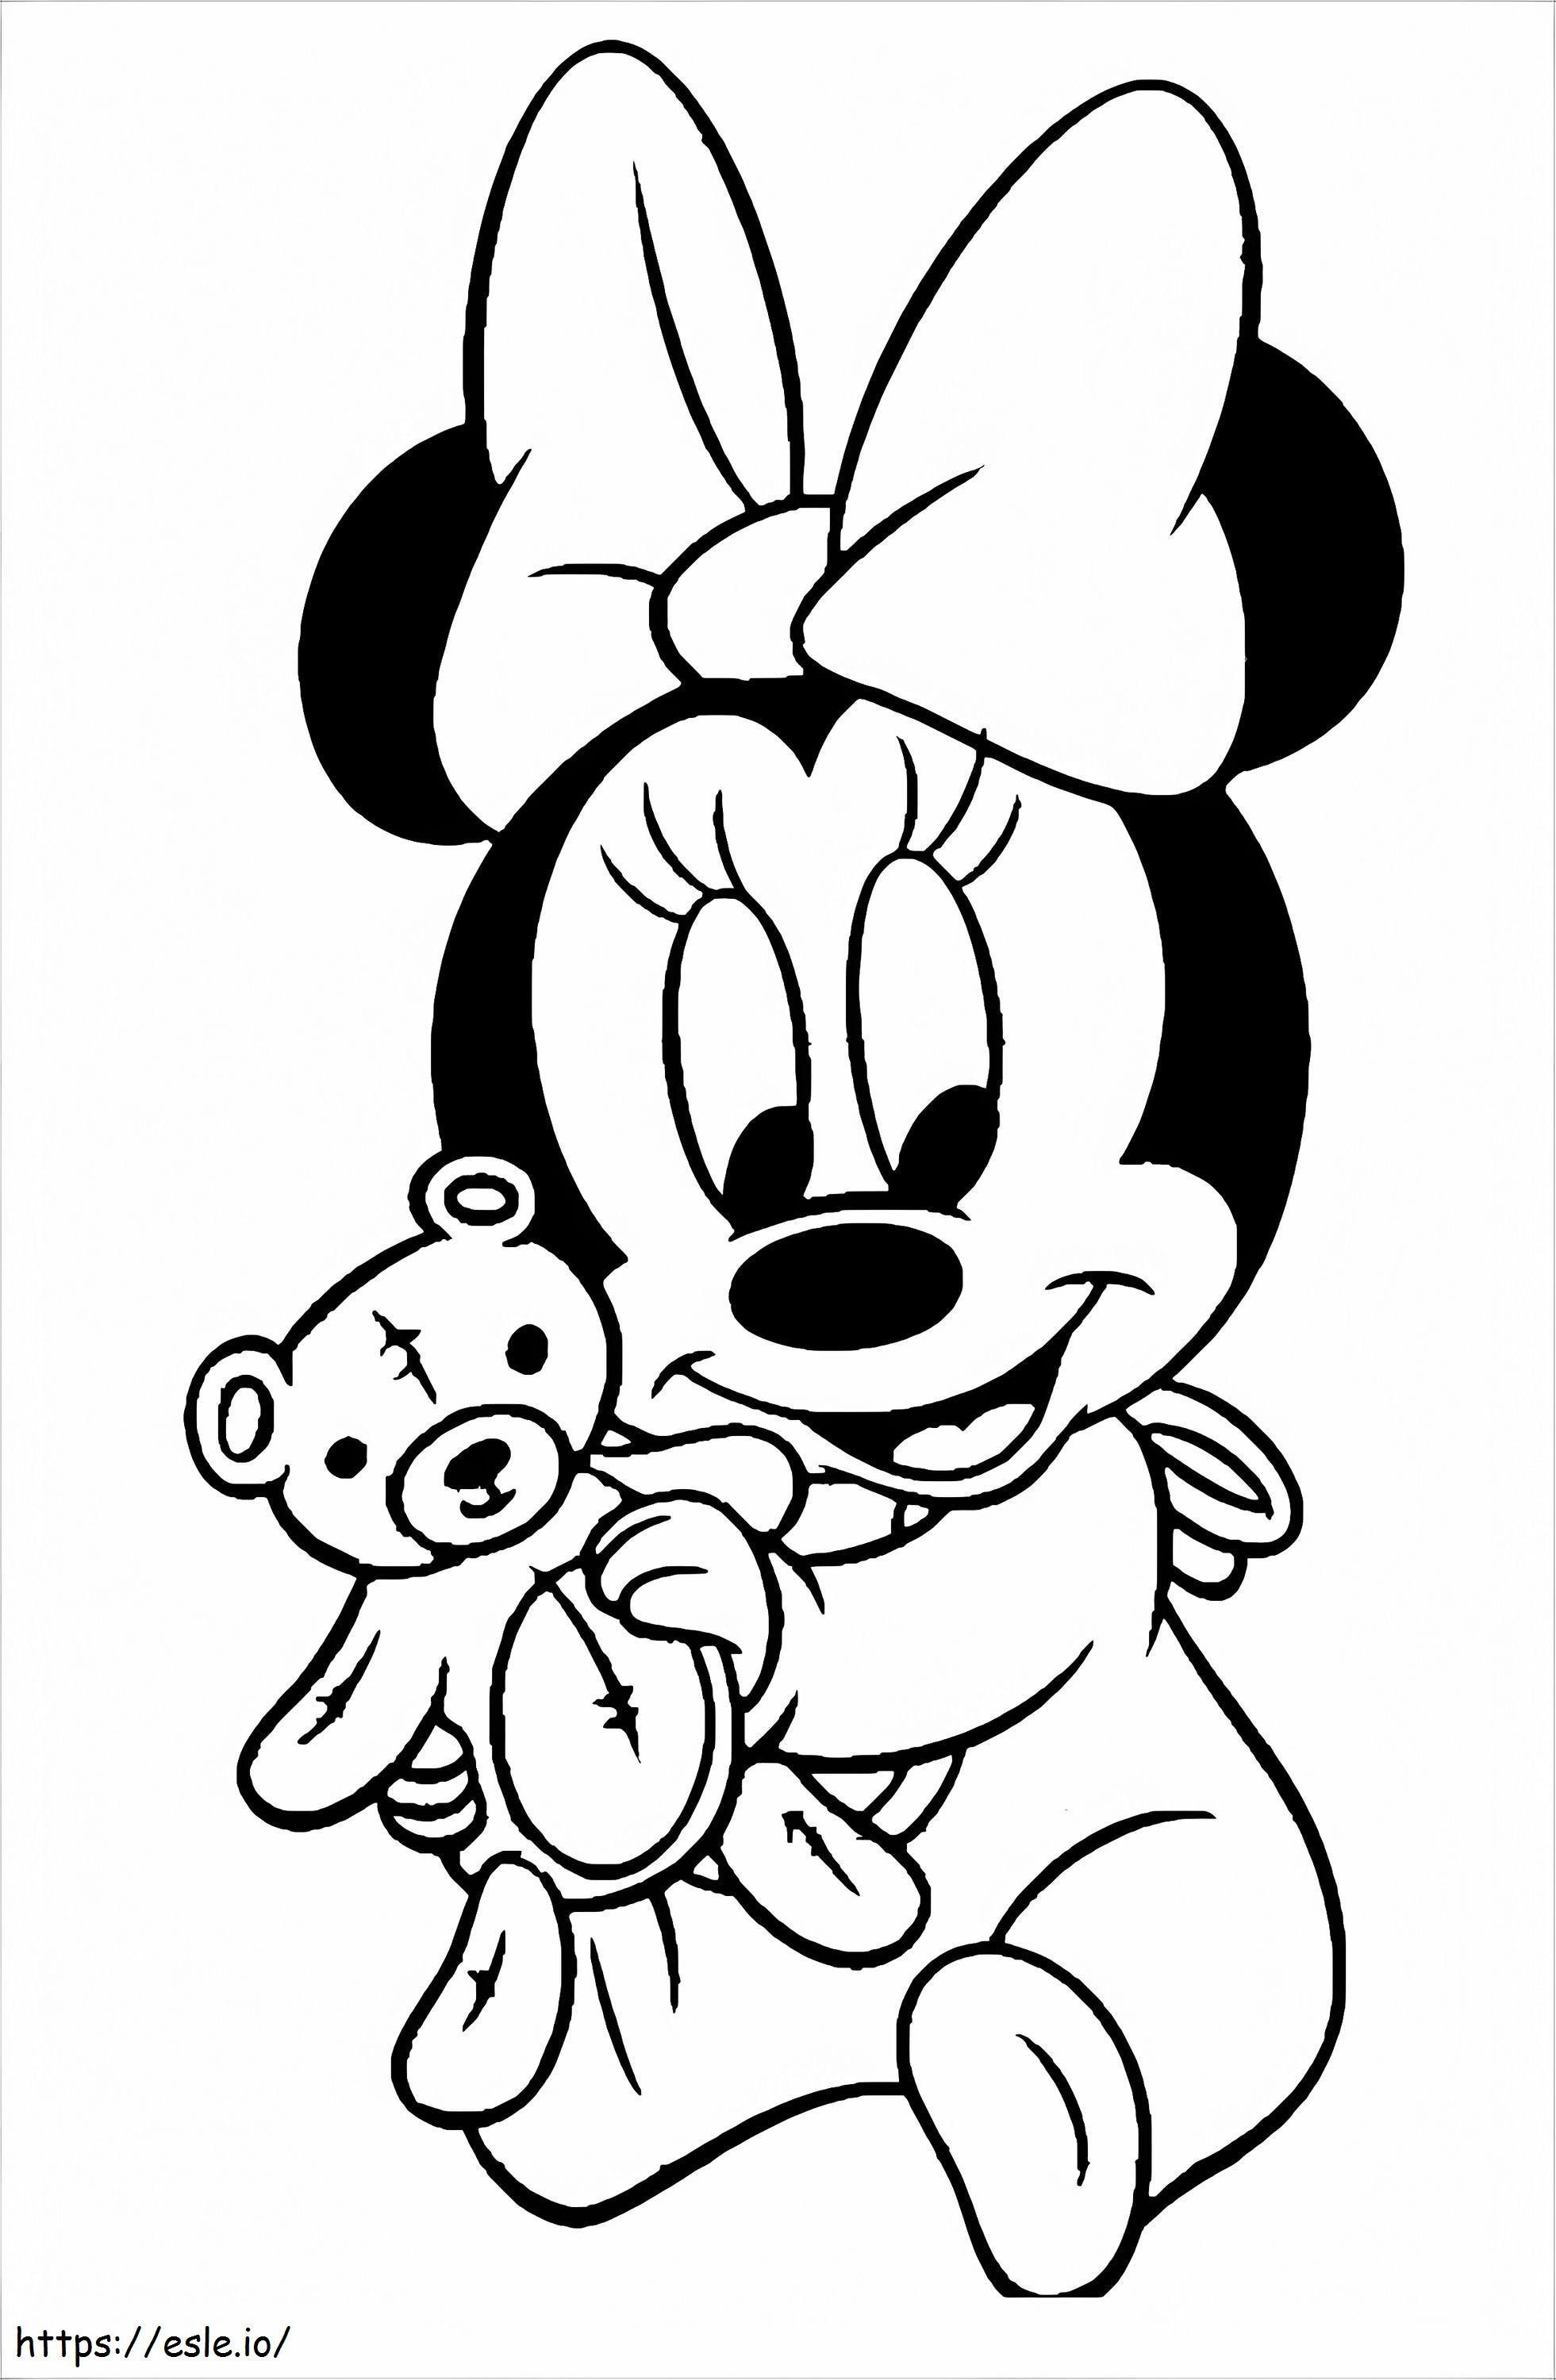 Coloriage 1532138954 Minnie Mouse avec peluche A4 à imprimer dessin